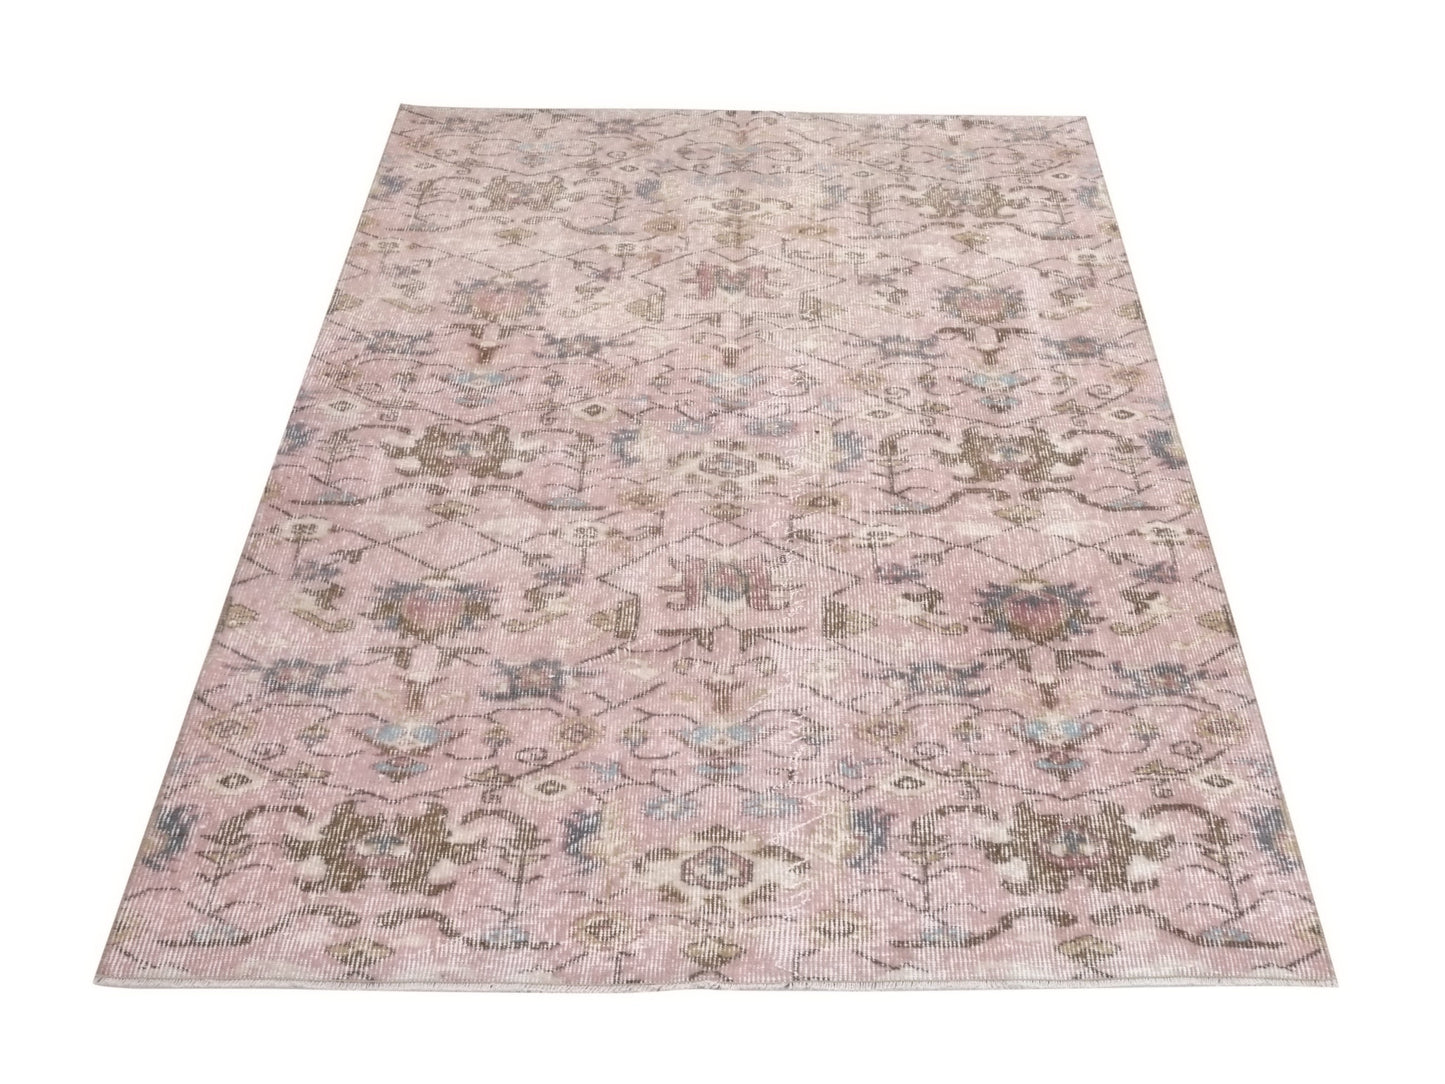 Turkish rug 4x7, Art deco Carpet rug, Oushak rug 4x7, Unique rug, Rare find Vintage rug, Turkey rug, Wool rug, One of a kind rug, 10281